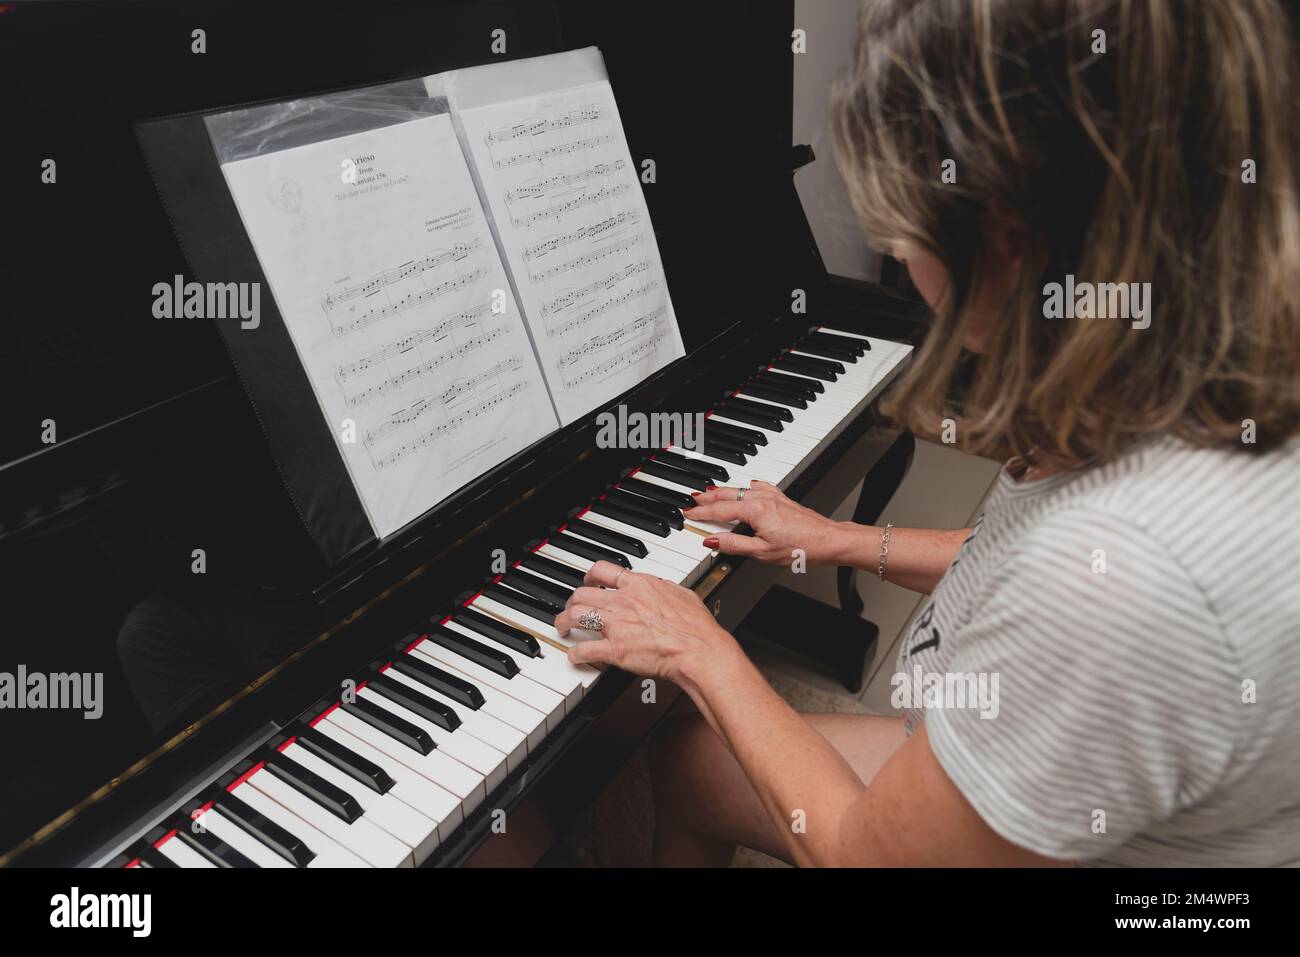 Schöne brasilianische Pianistin, die Klaviertasten berührt und Klavier spielt. Konzept Musikunterricht und Kunst. Entspannen und fröhlich. Stockfoto